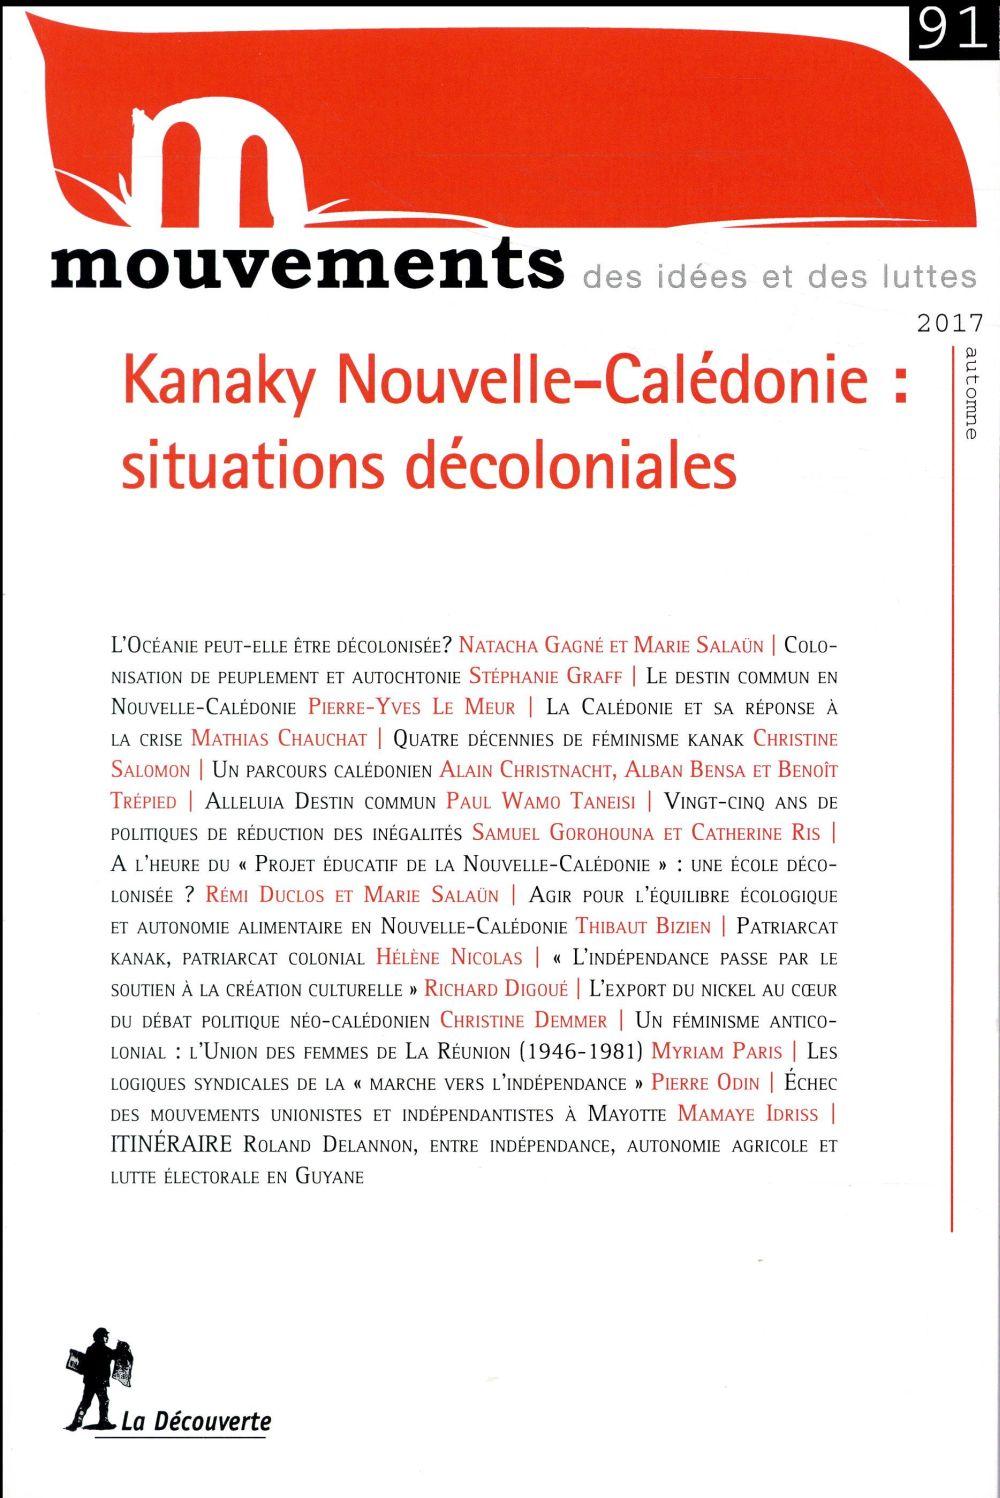 Vente Livre :                                    REVUE MOUVEMENTS n.91 ; Kanaky Nouvelle-Calédonie : situations décoloniales
- Revue Mouvements                                     